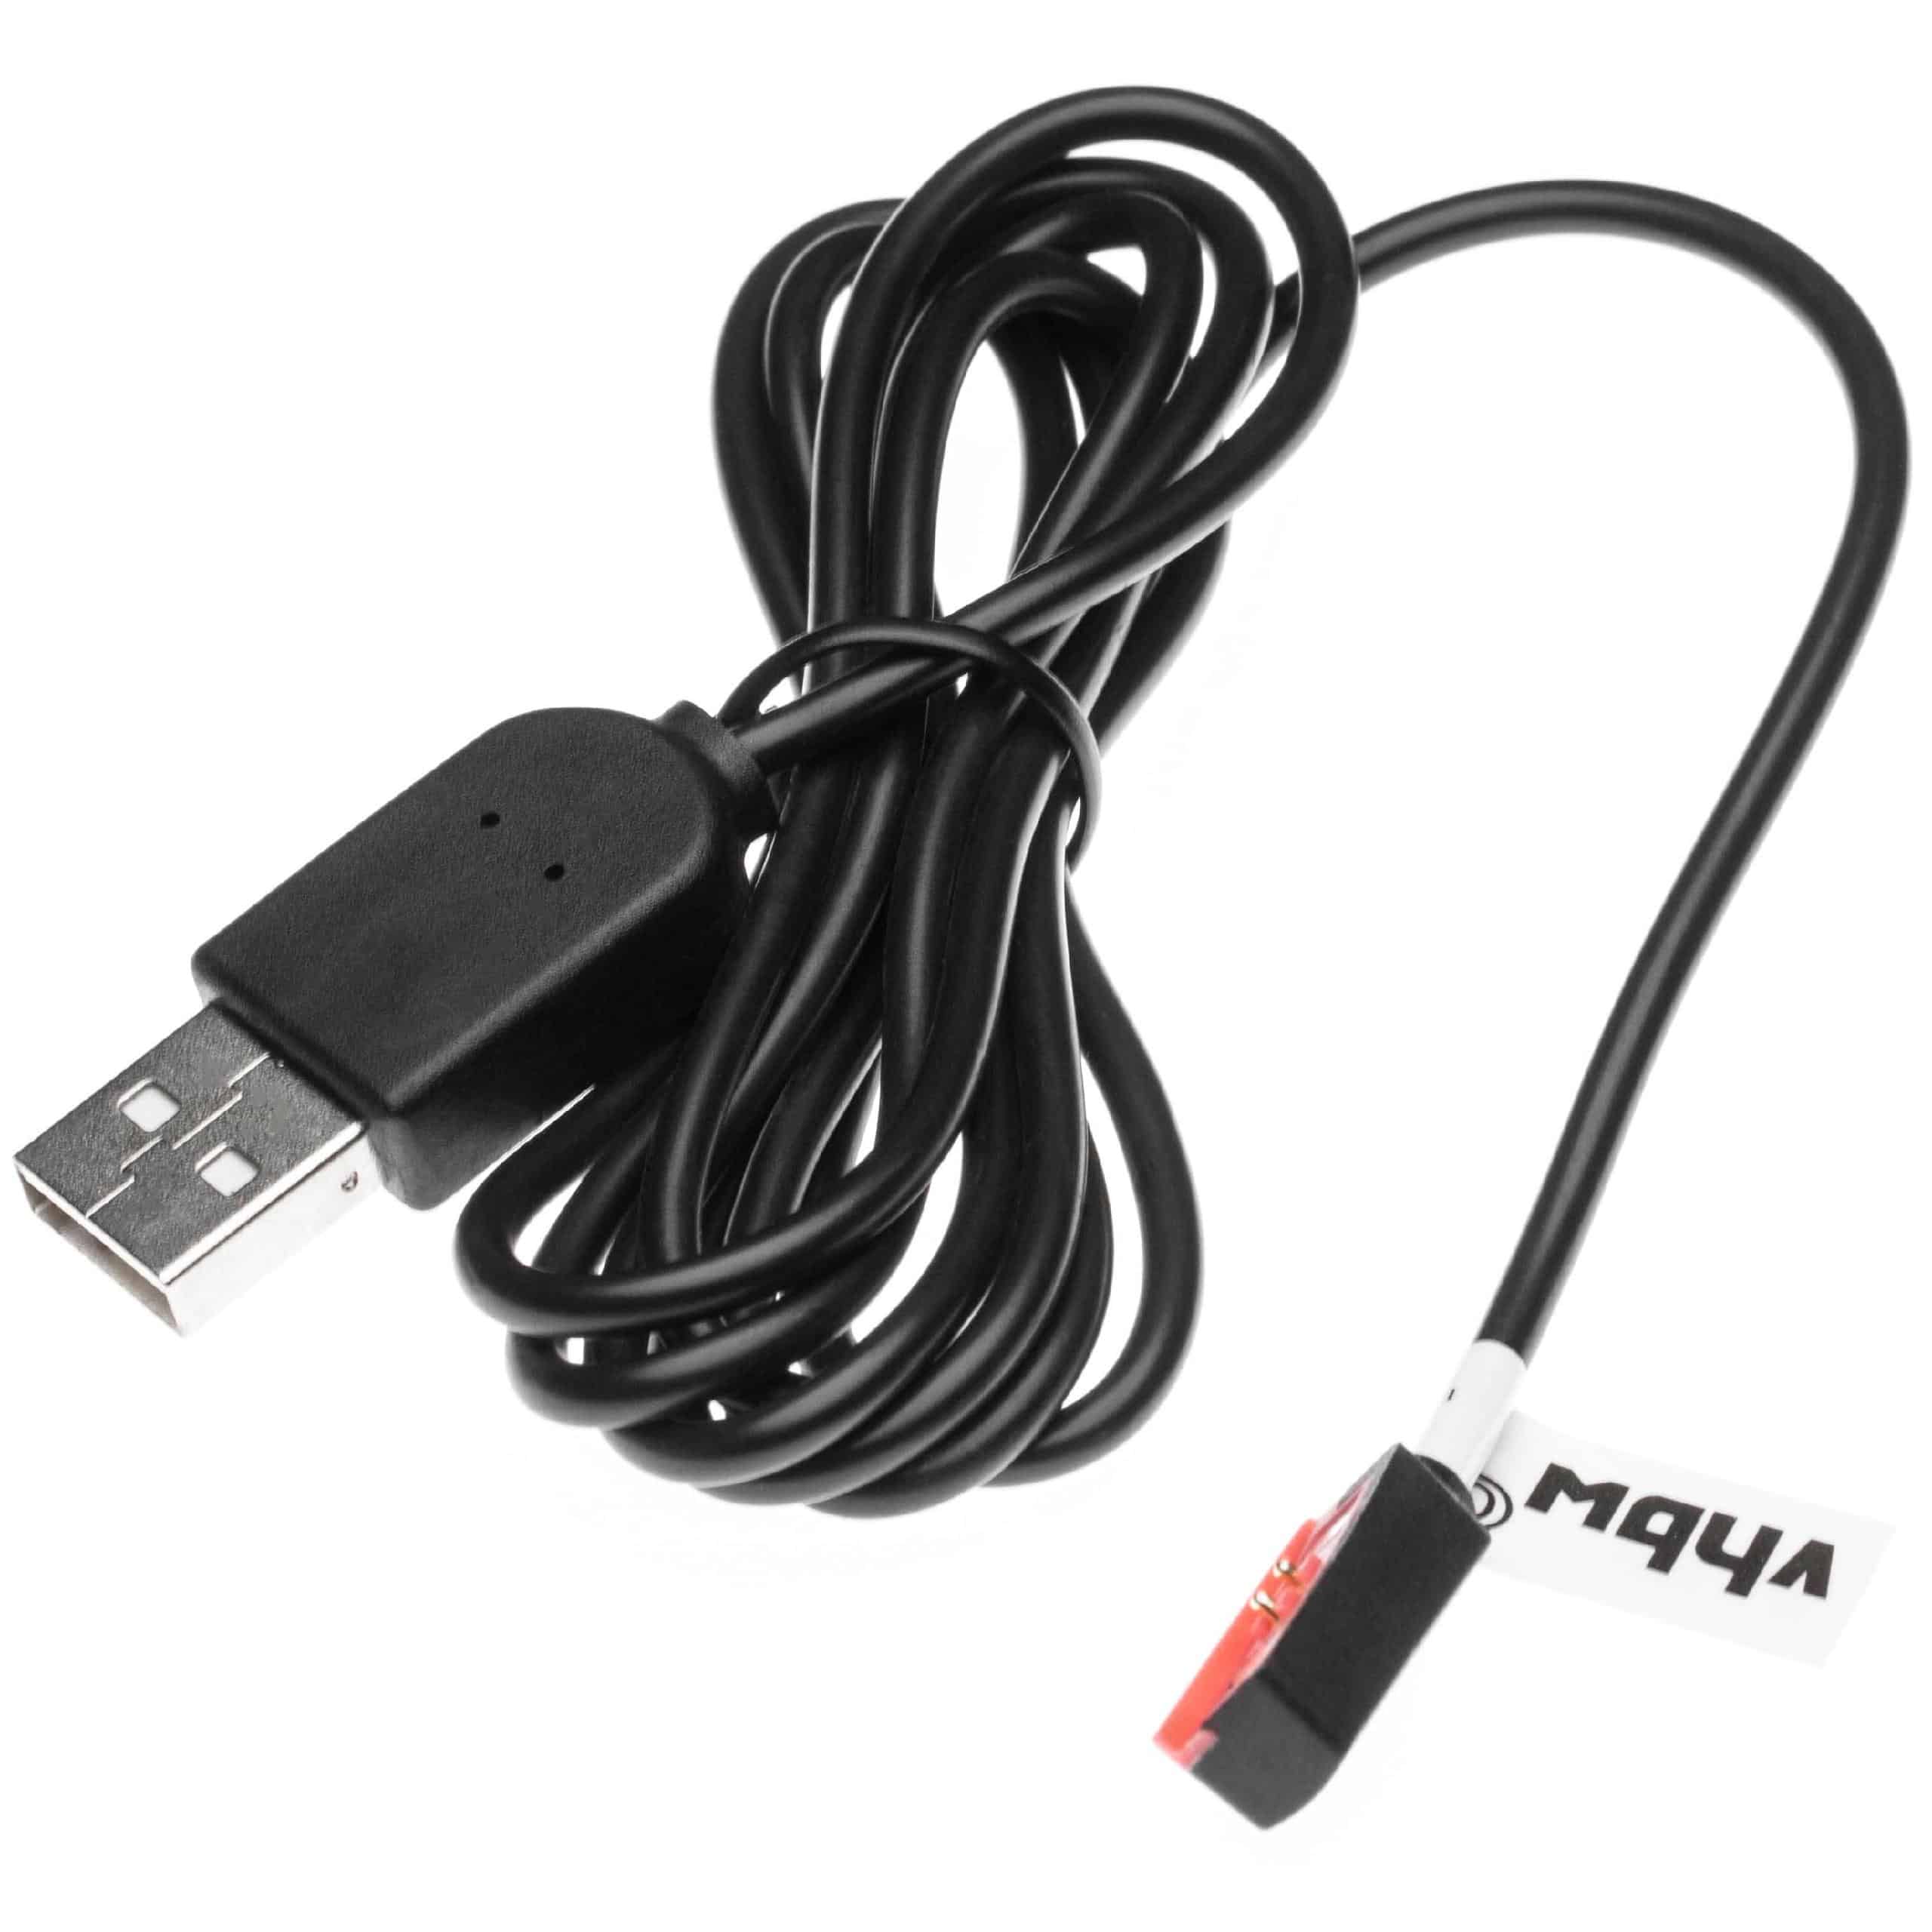 Cable de carga USB para smartwatch Pebble Steel 2 - negro 120 cm